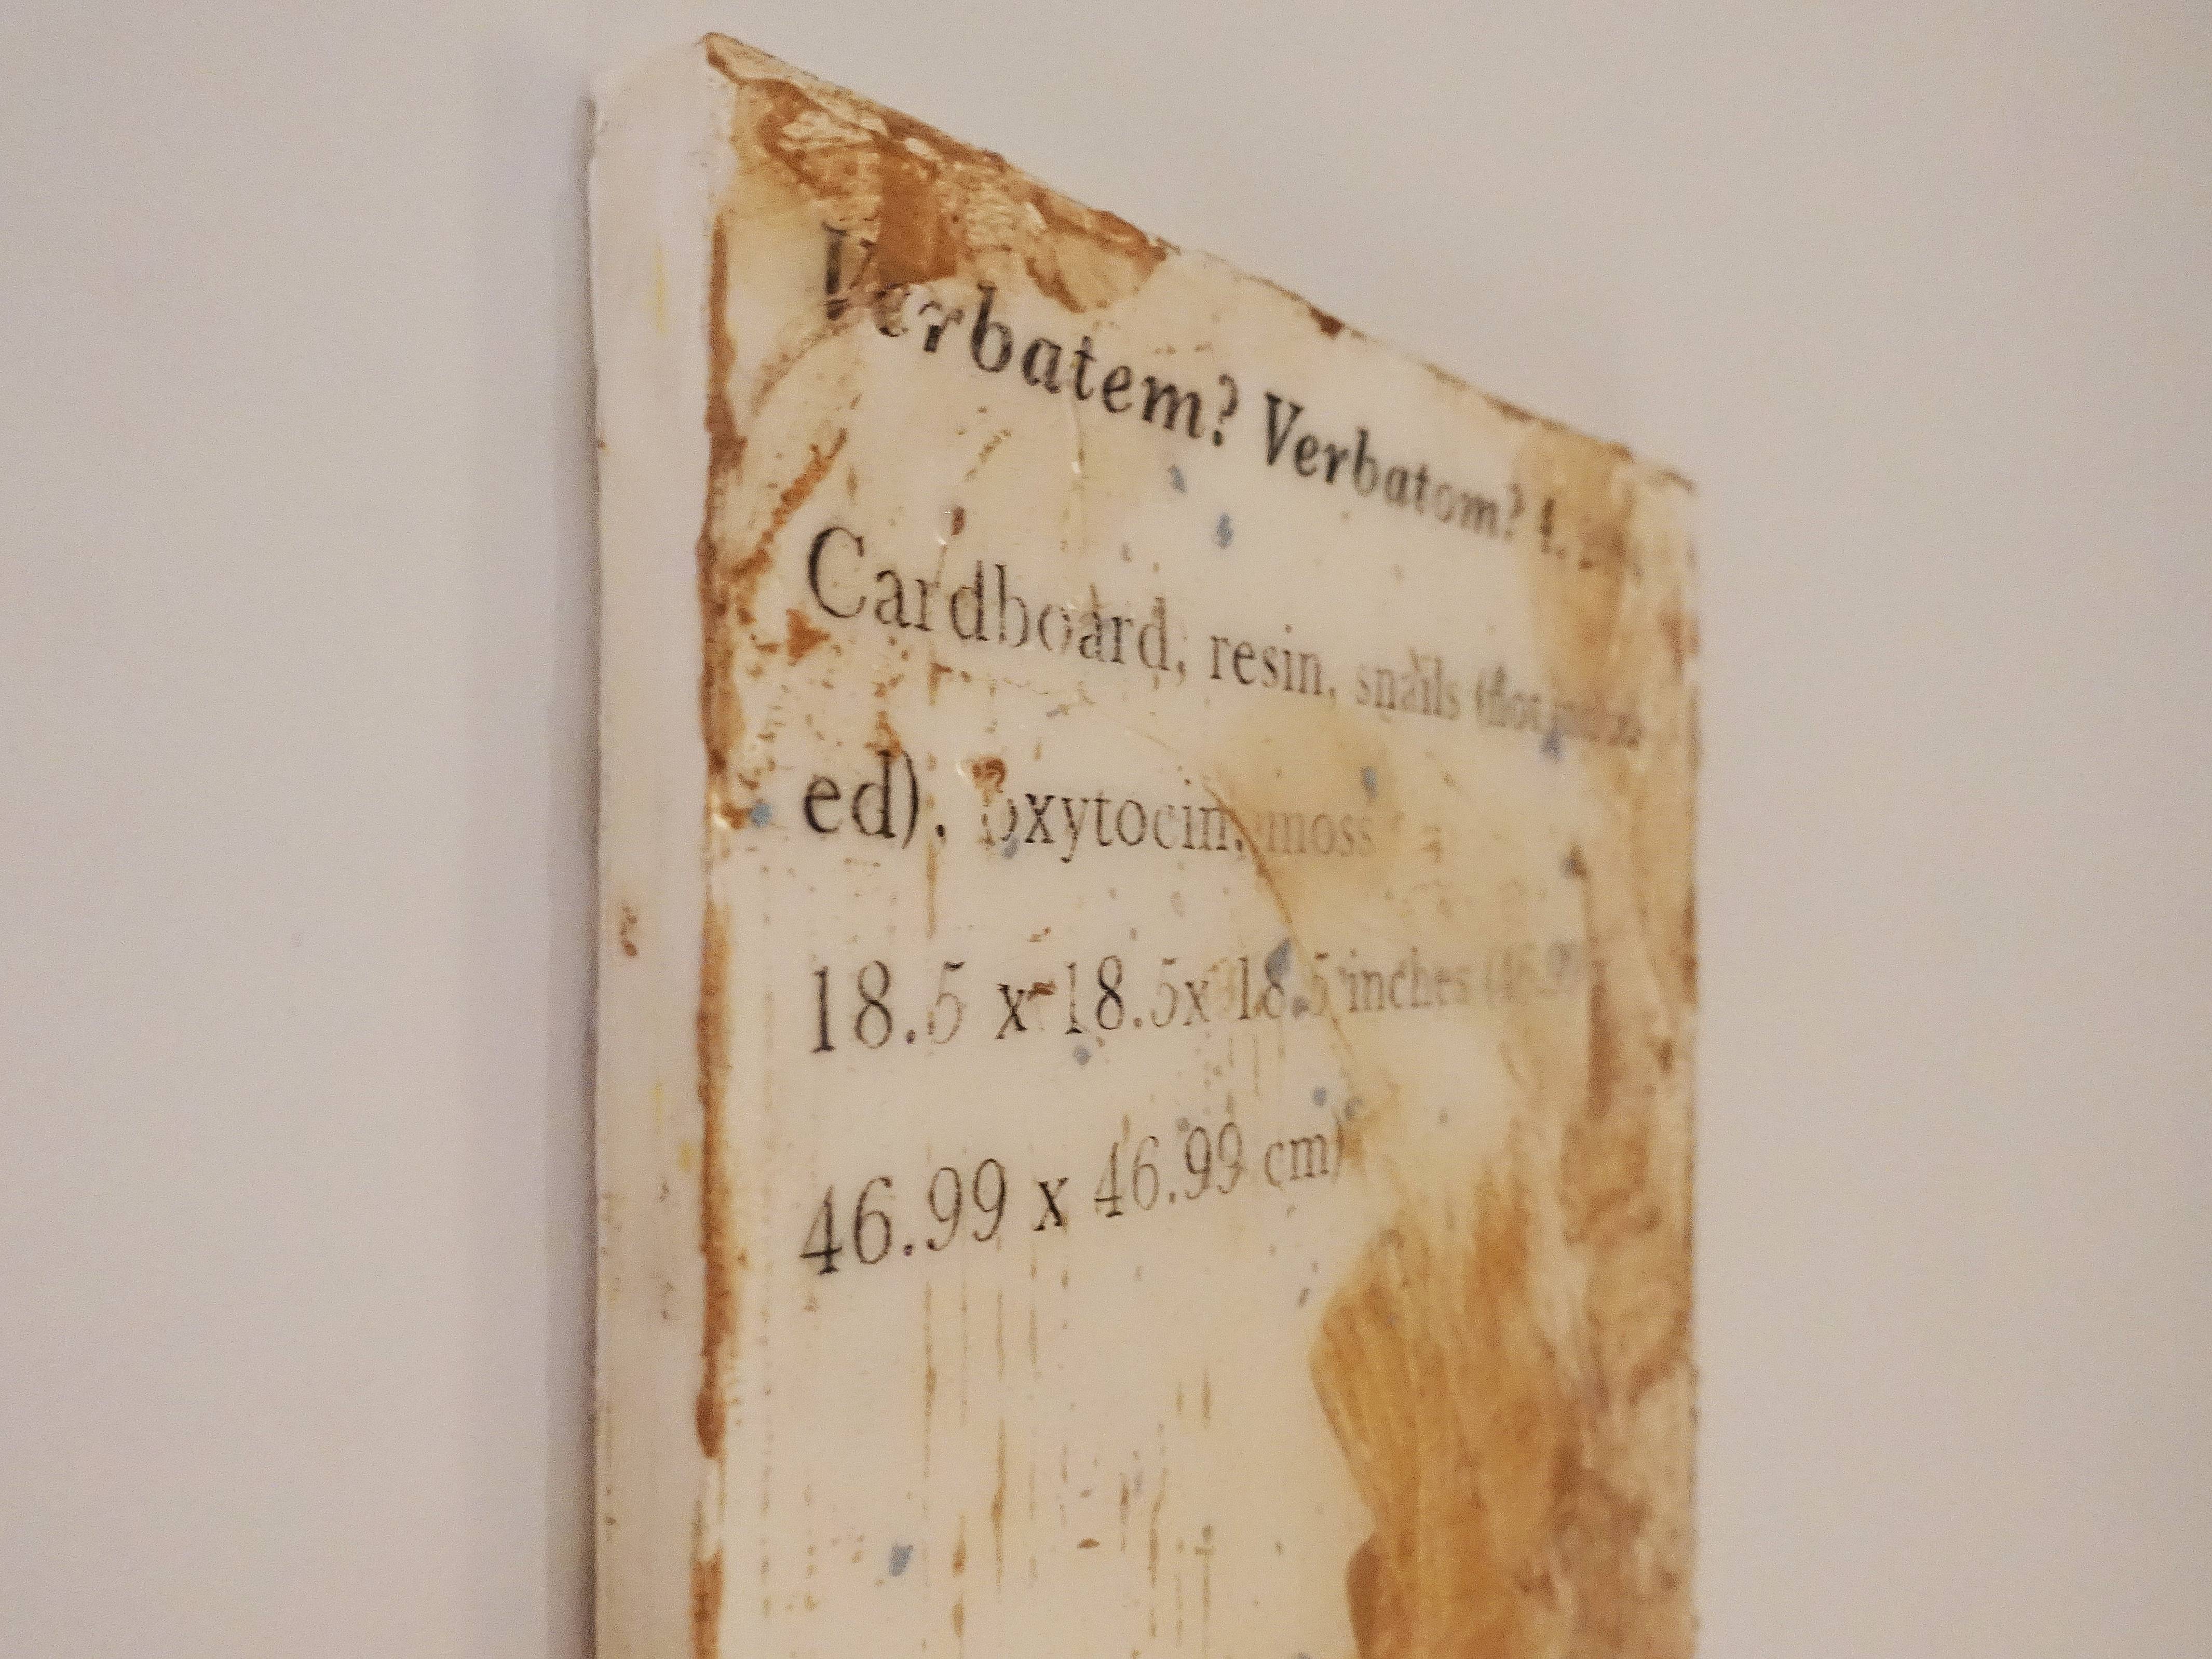 羅智信，《Verbatem?verbatom?4》細節，27 x 35 cm，畫布、碳粉、樹脂、威爾剛、蝸牛(包含在作品中)，2019。